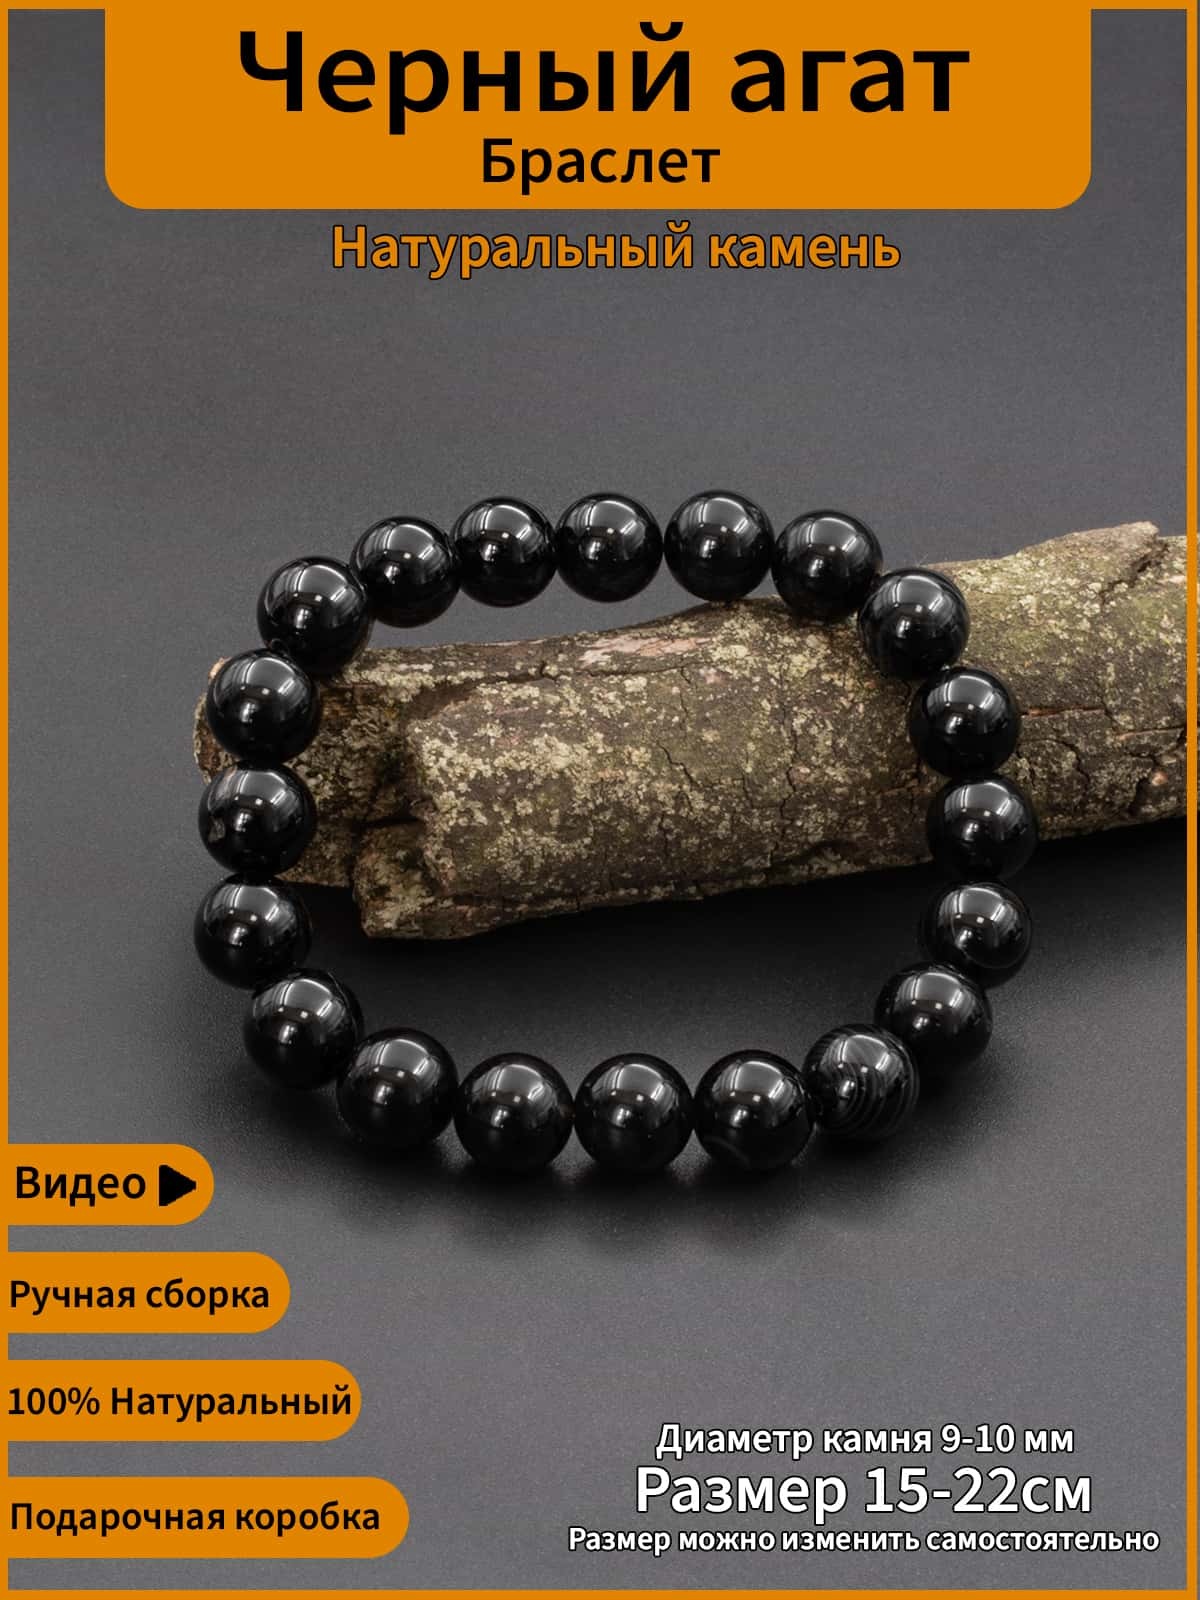 Черный агат с полосками, редкий камень браслет